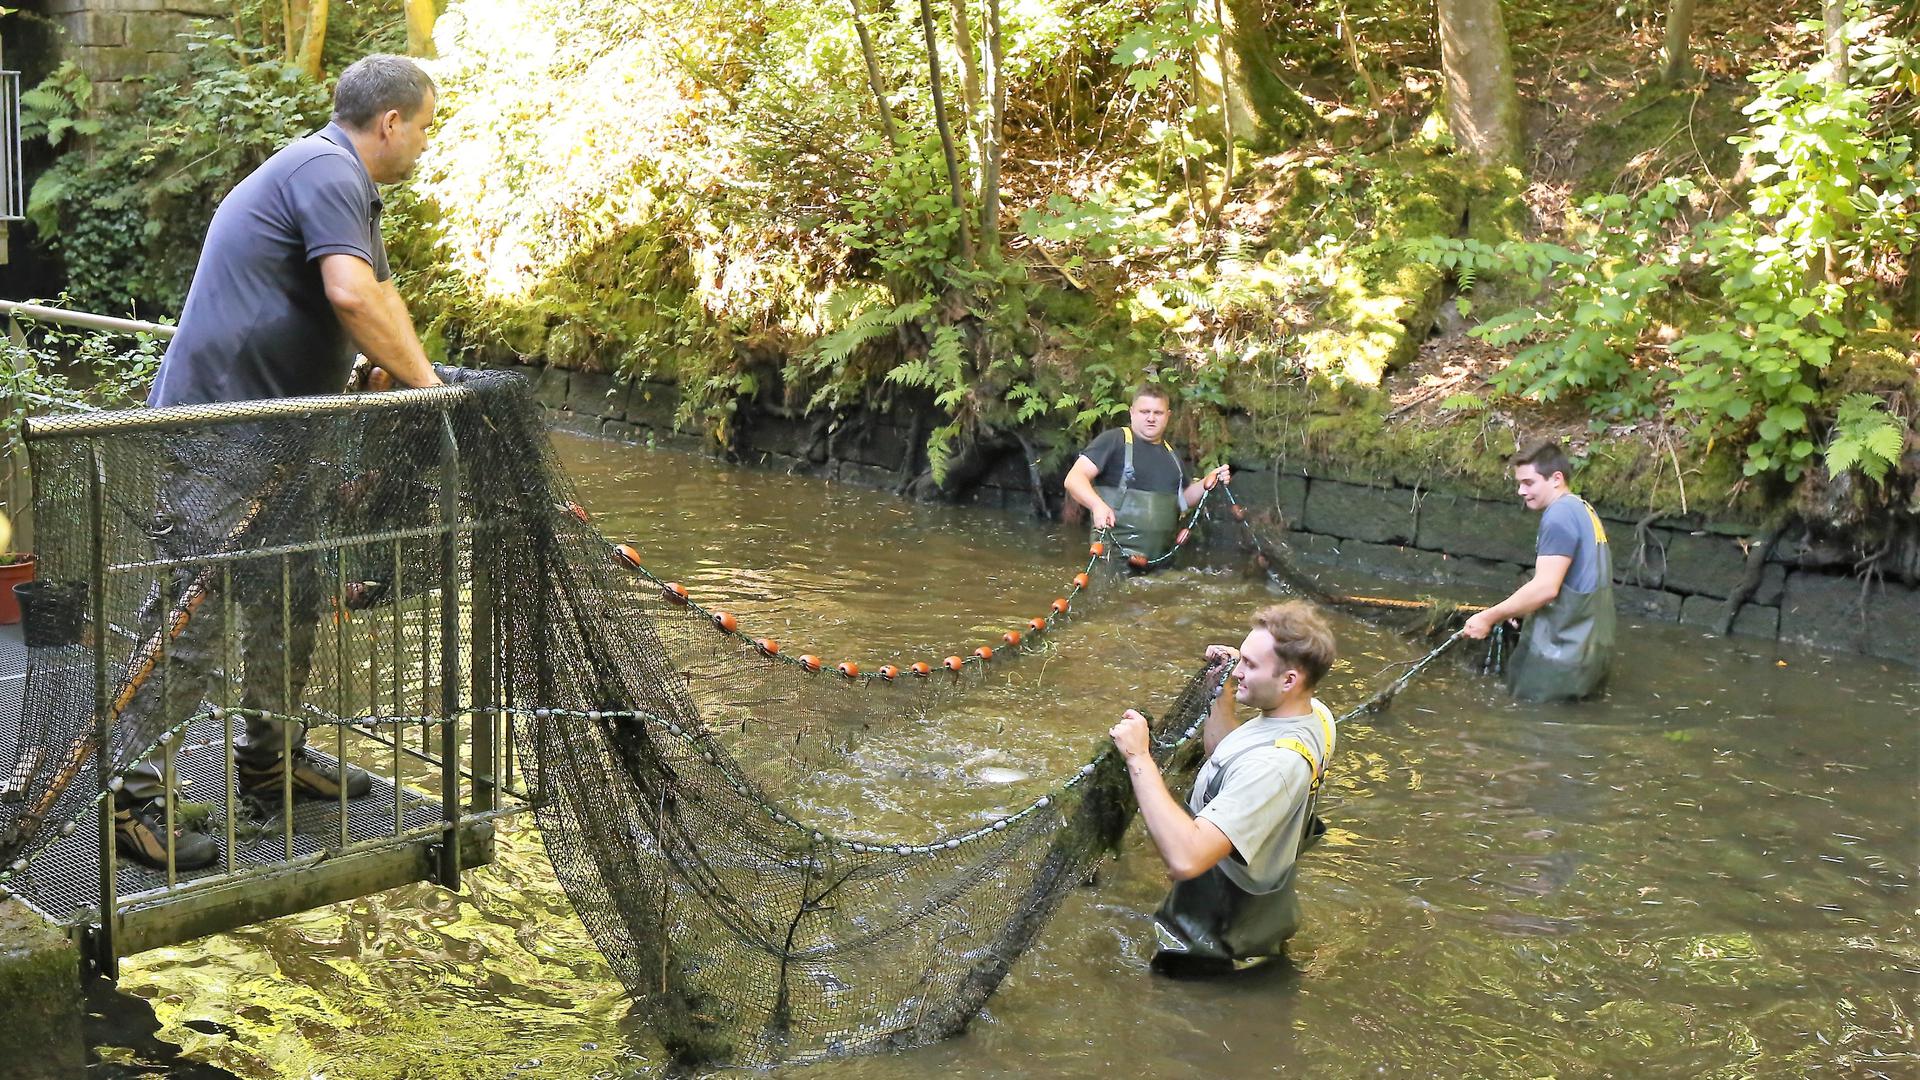 Handarbeit am Mühlkanal: Mit einem speziellen Netz werden große Fische aus dem alten Kanal gezogen.